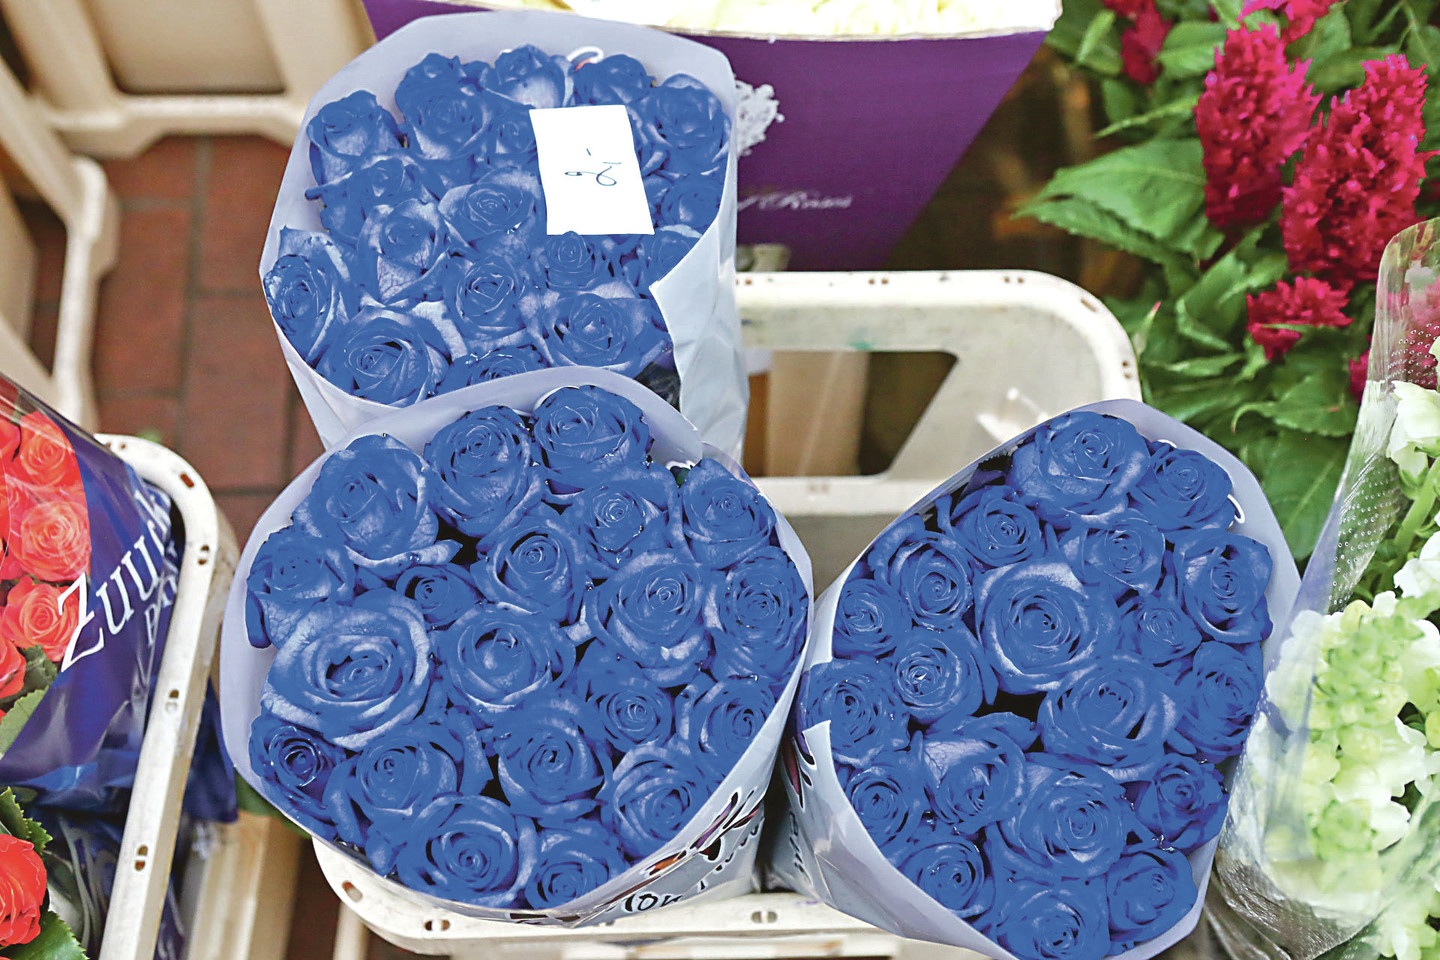 Mėlynai dažyti rožių žiedai vilioja lakios vaizduotės ir drąsius kauniečius.<br>G.Bitvinsko nuotr.